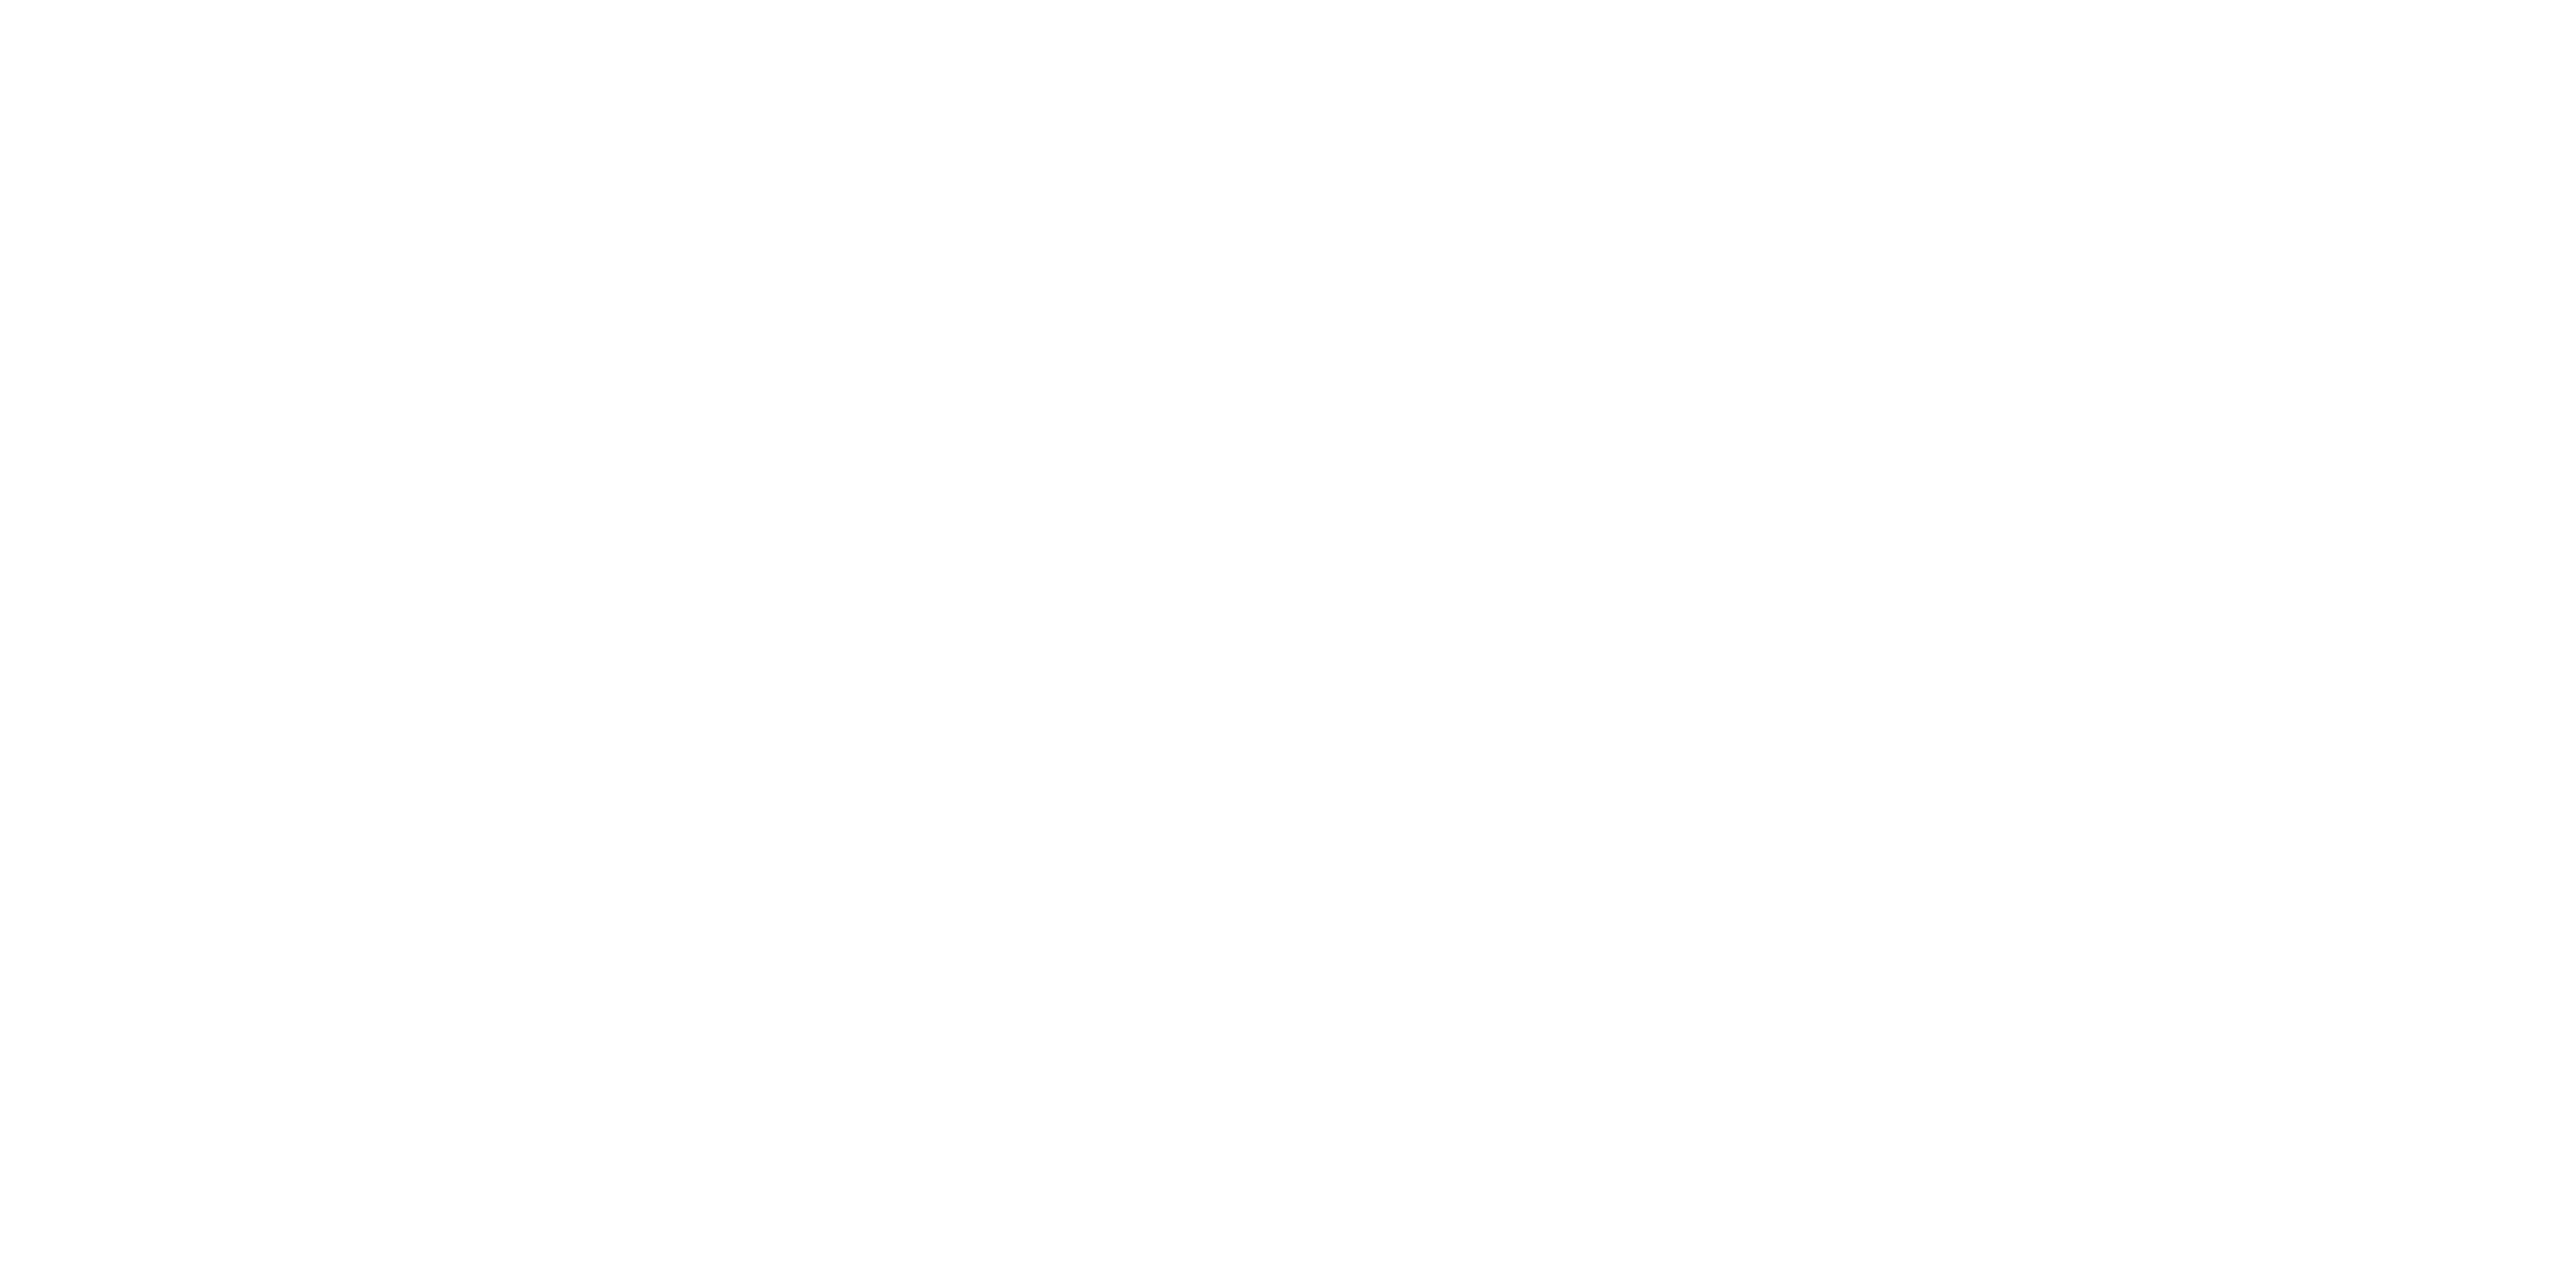 Het logo van Celonis